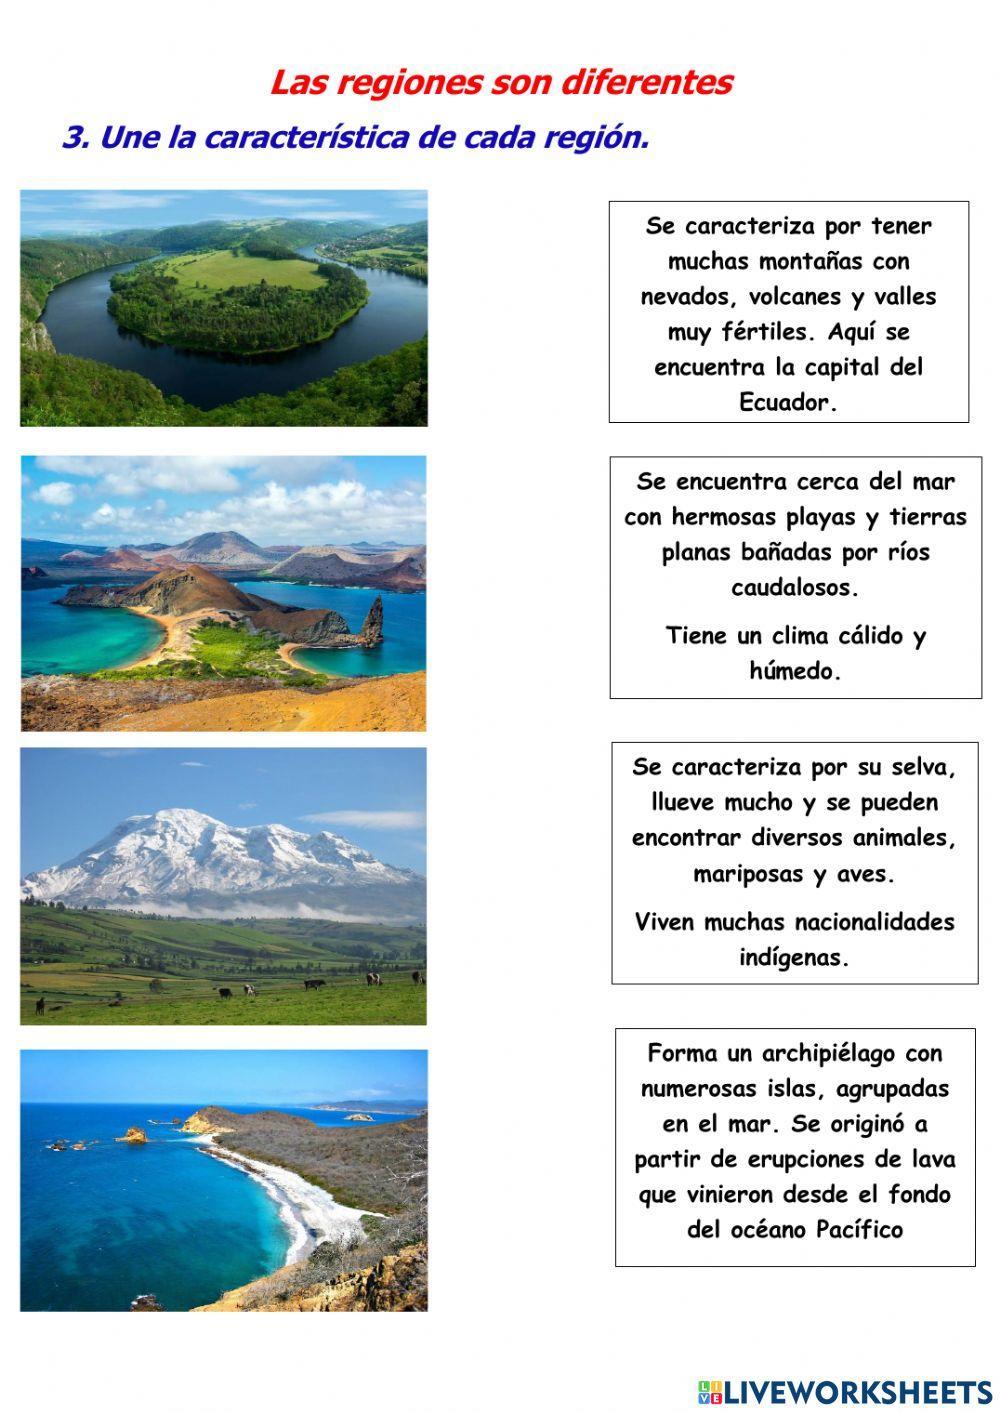 El Ecuador y sus regiones naturales